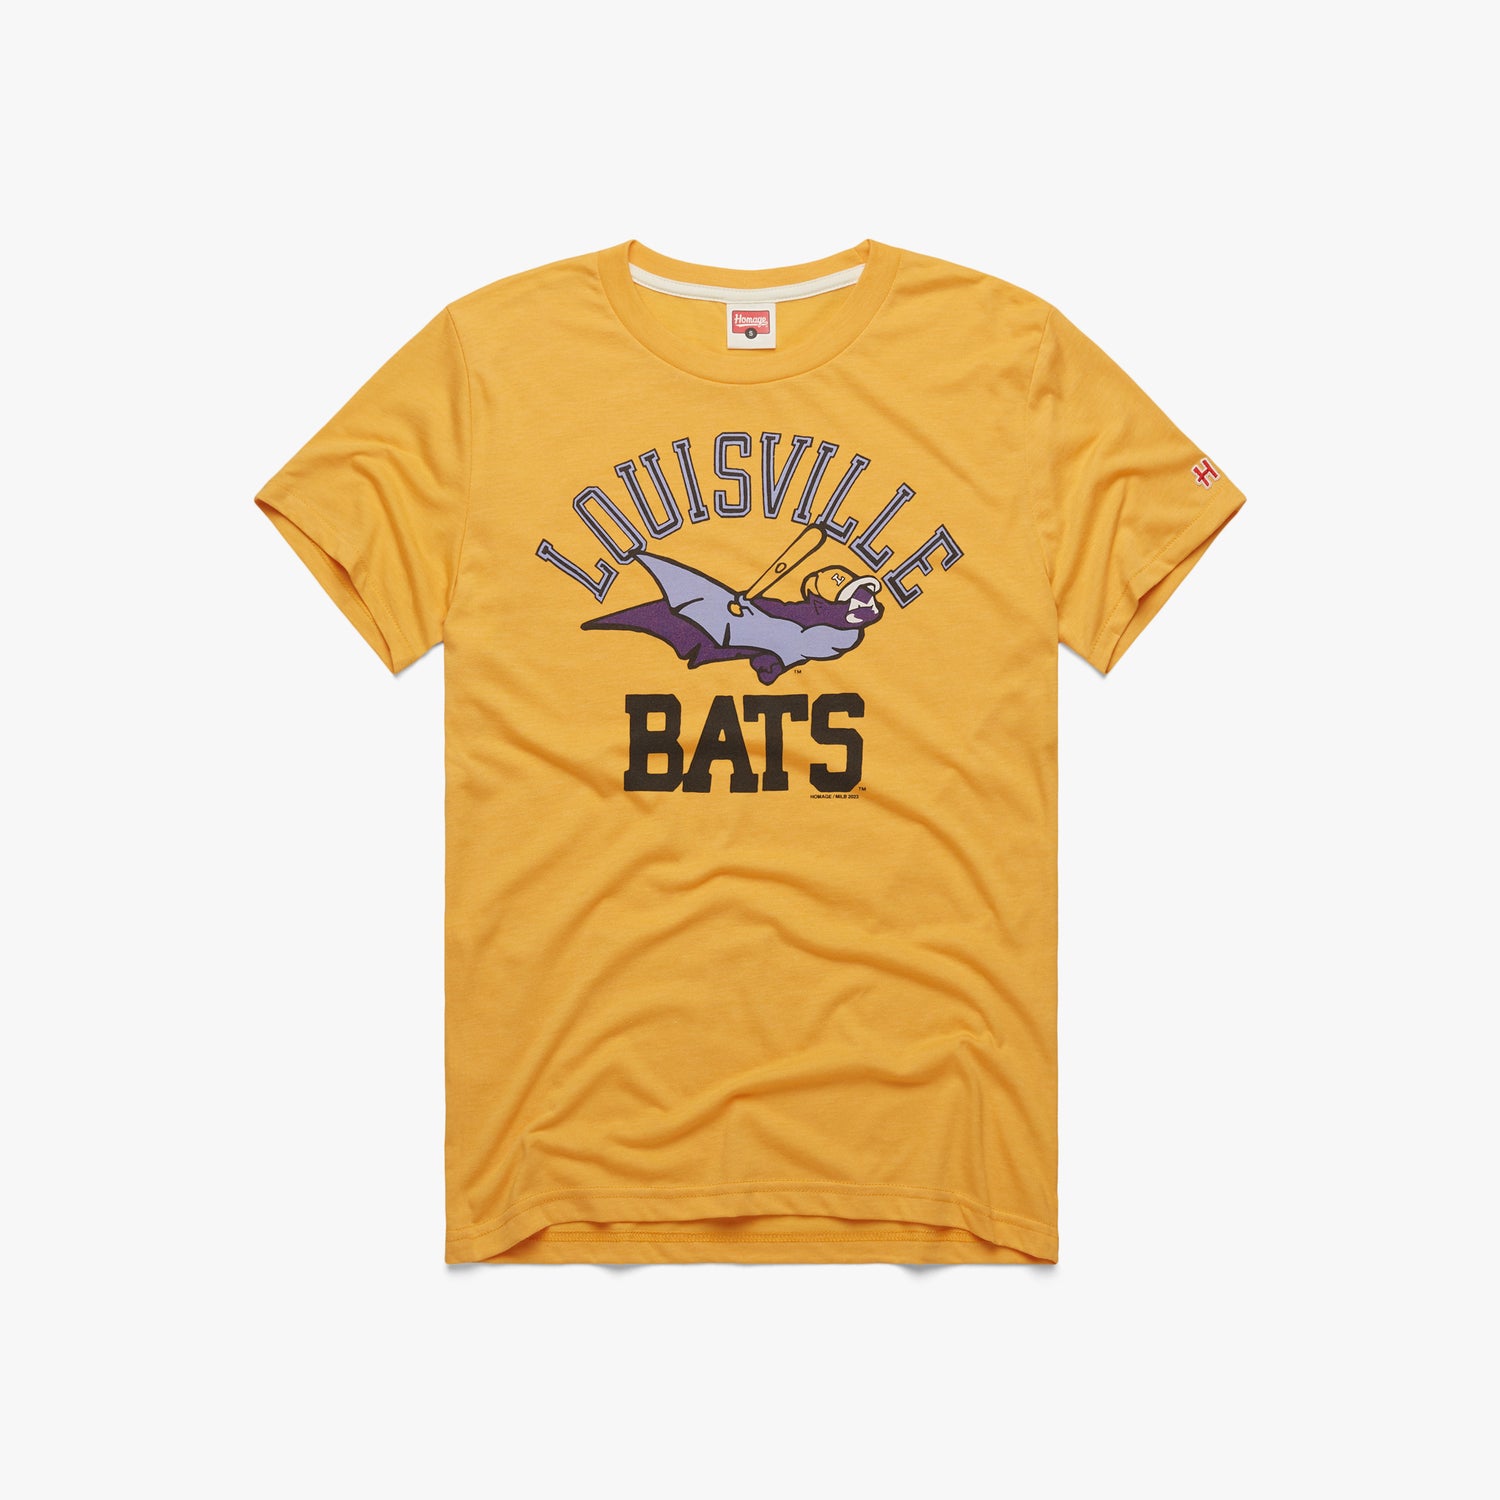 Vintage Louisville Slugger Tshirt Small 